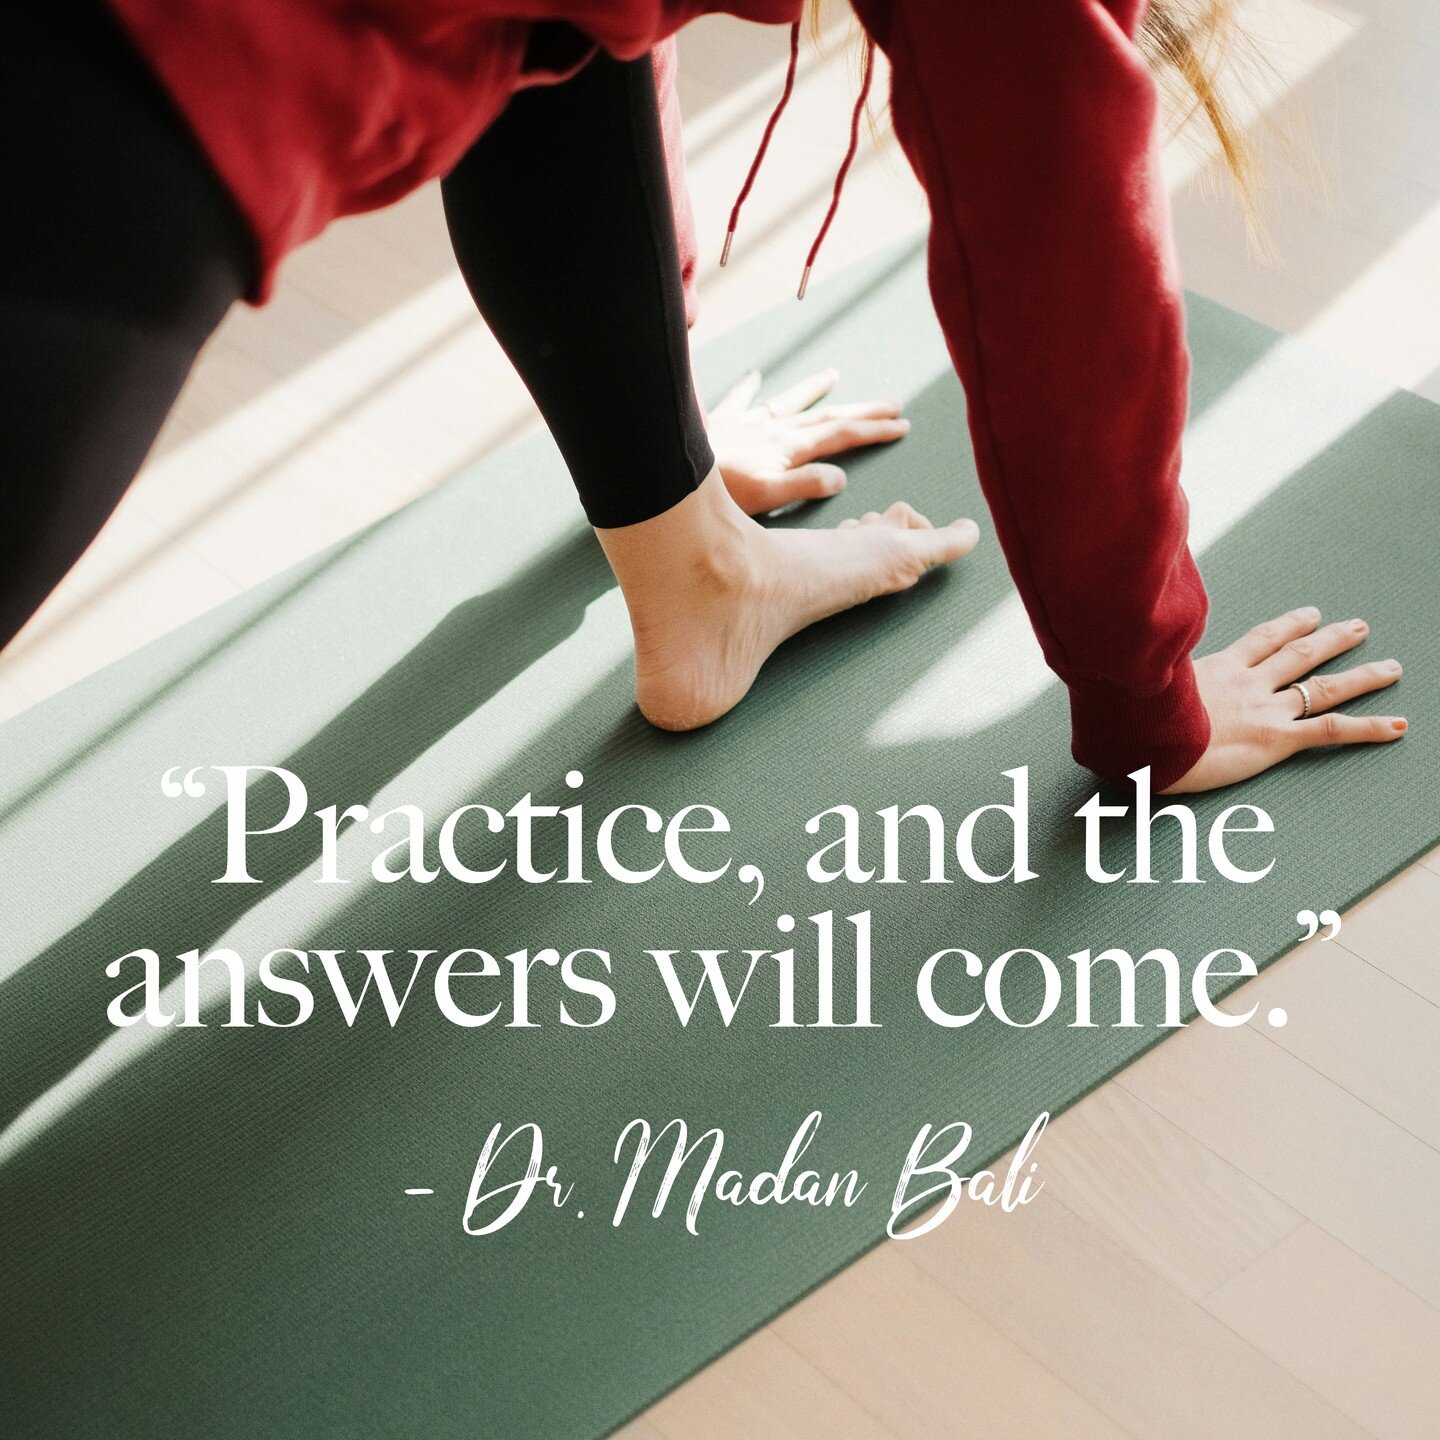 &laquo; 𝗣𝗿𝗮𝘁𝗶𝗾𝘂𝗲𝘇, 𝗲𝘁 𝗹𝗲𝘀 𝗿&eacute;𝗽𝗼𝗻𝘀𝗲𝘀 𝘃𝗶𝗲𝗻𝗱𝗿𝗼𝗻𝘁. &raquo;
&ndash; Dr. Madan Bali

Avec une vari&eacute;t&eacute; de cours le matin, le midi et le soir, Innocere Yoga est l&agrave; pour soutenir votre pratique. R&eacut